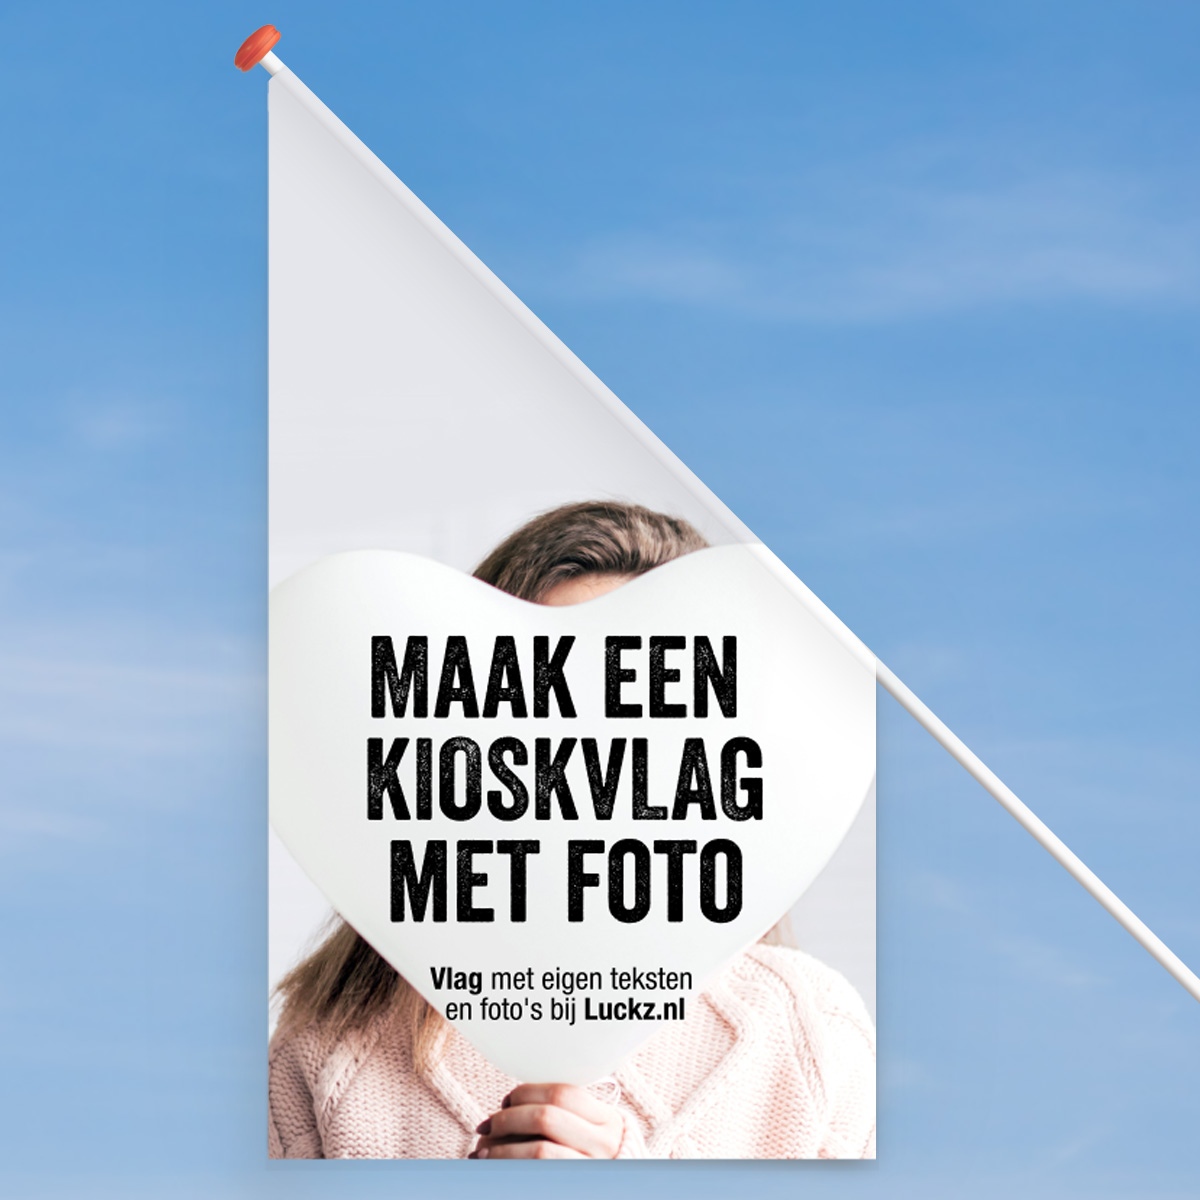 Vlag met foto ontwerpen Kioskvlag 60x60x120 cm